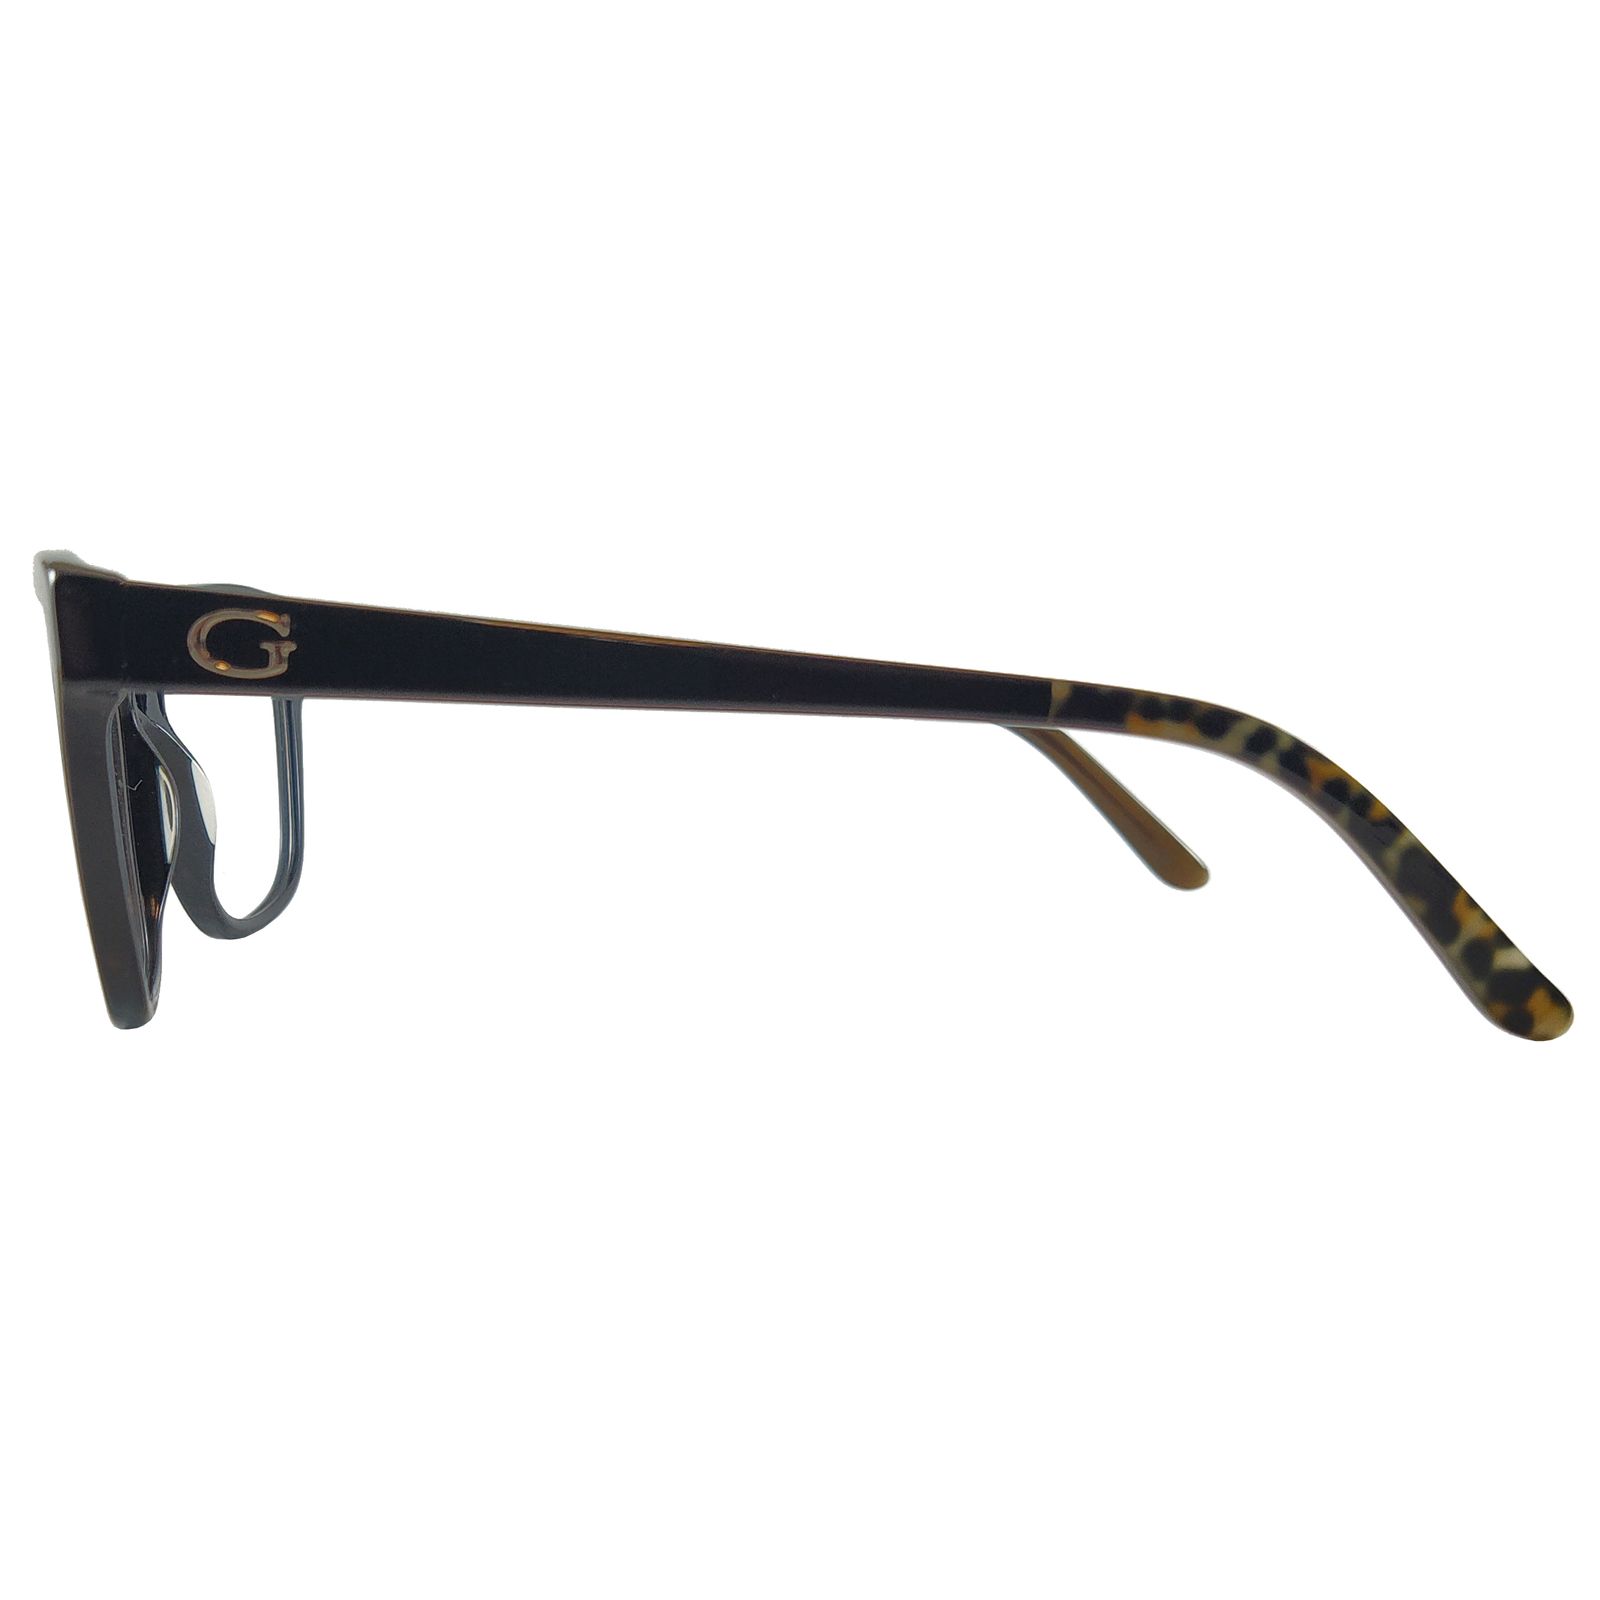 فریم عینک طبی زنانه گس مدل GU254100154 -  - 4